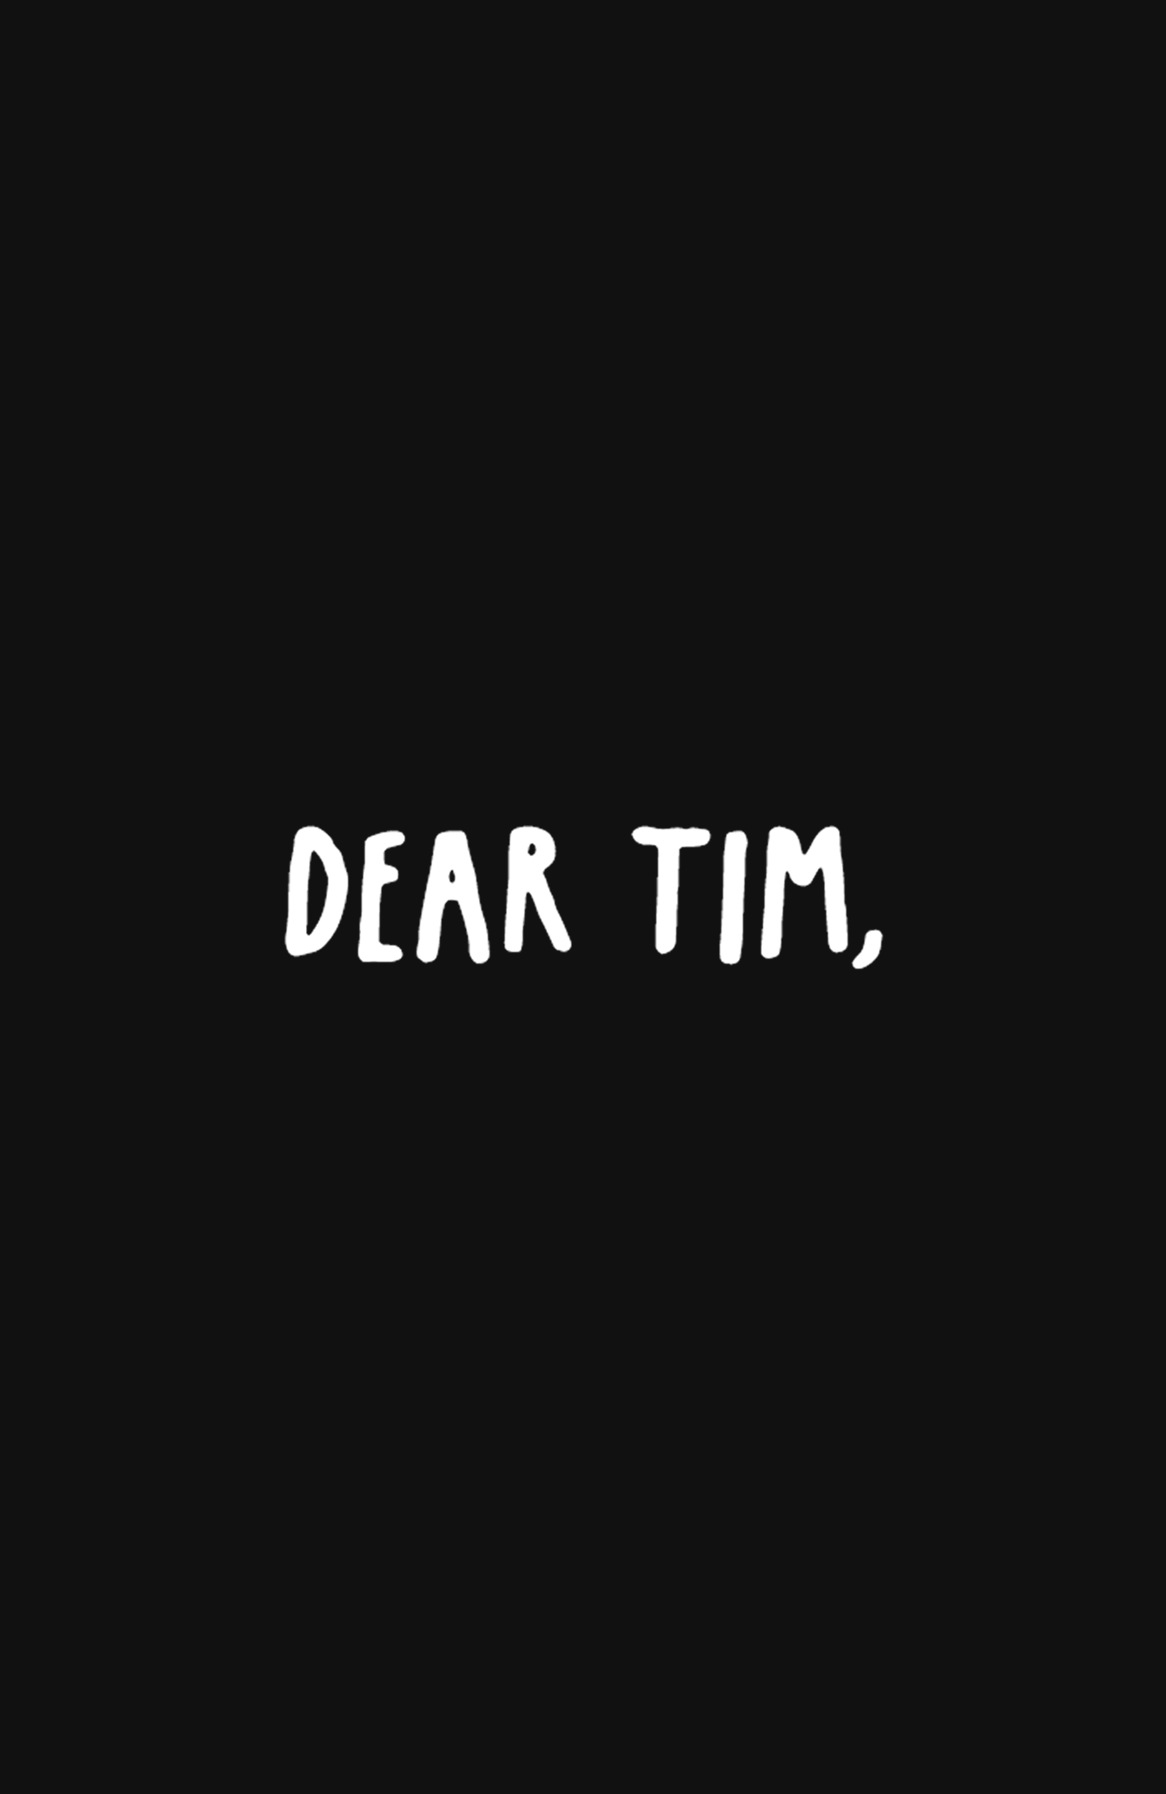 Light Dear Tim